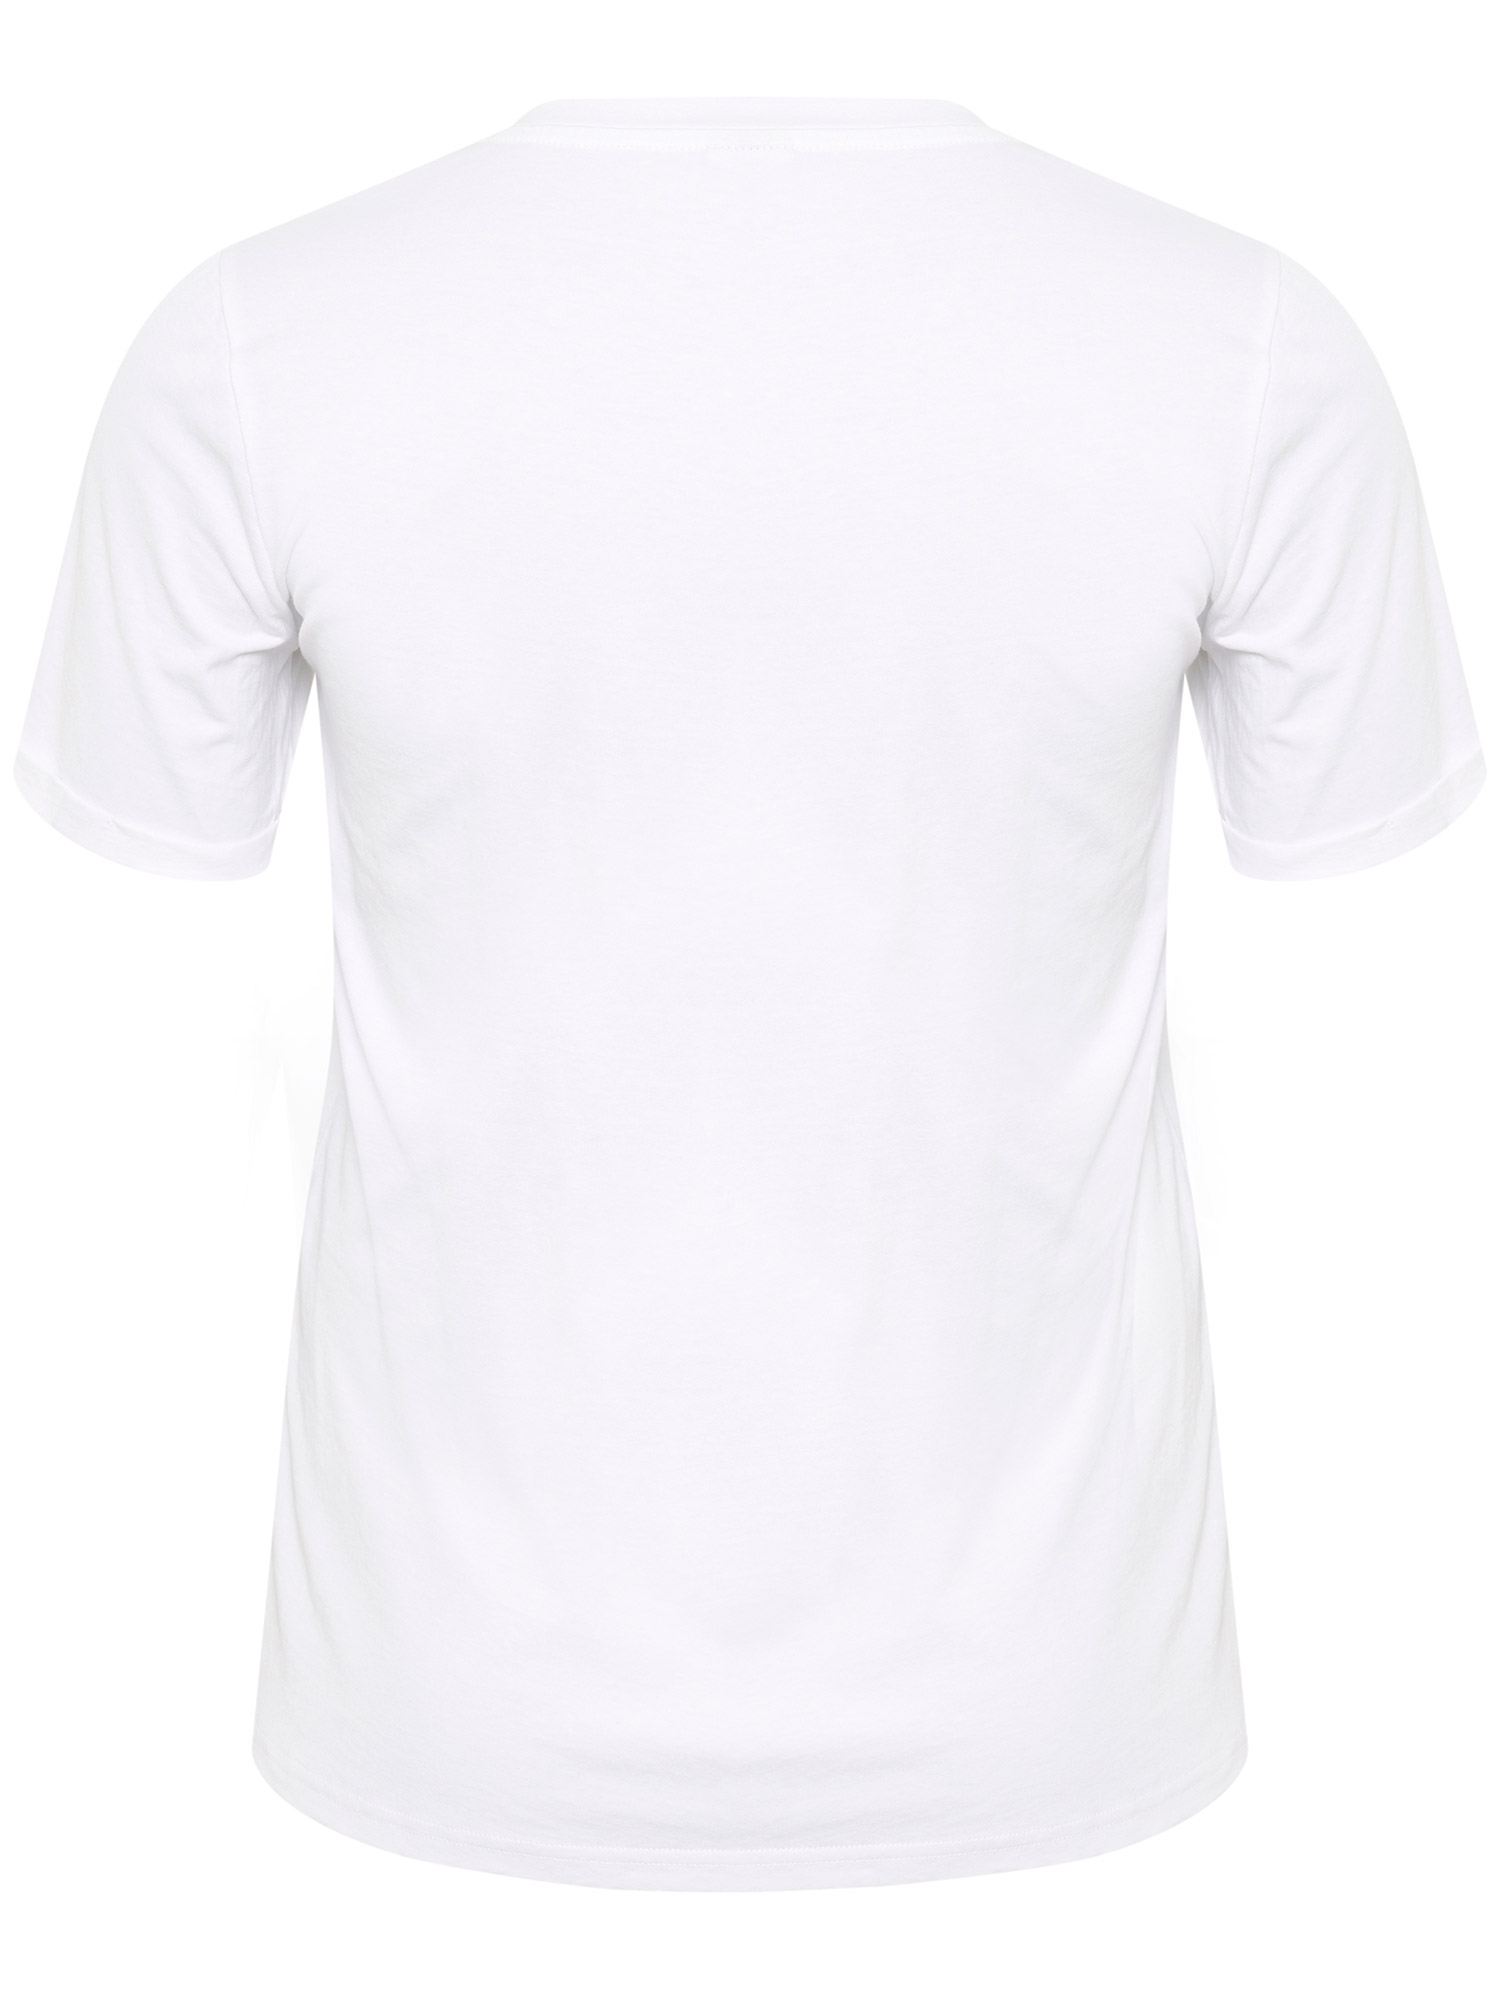 KCyvea - Hvit t-skjorte i bomull med trykk fra Kaffe Curve